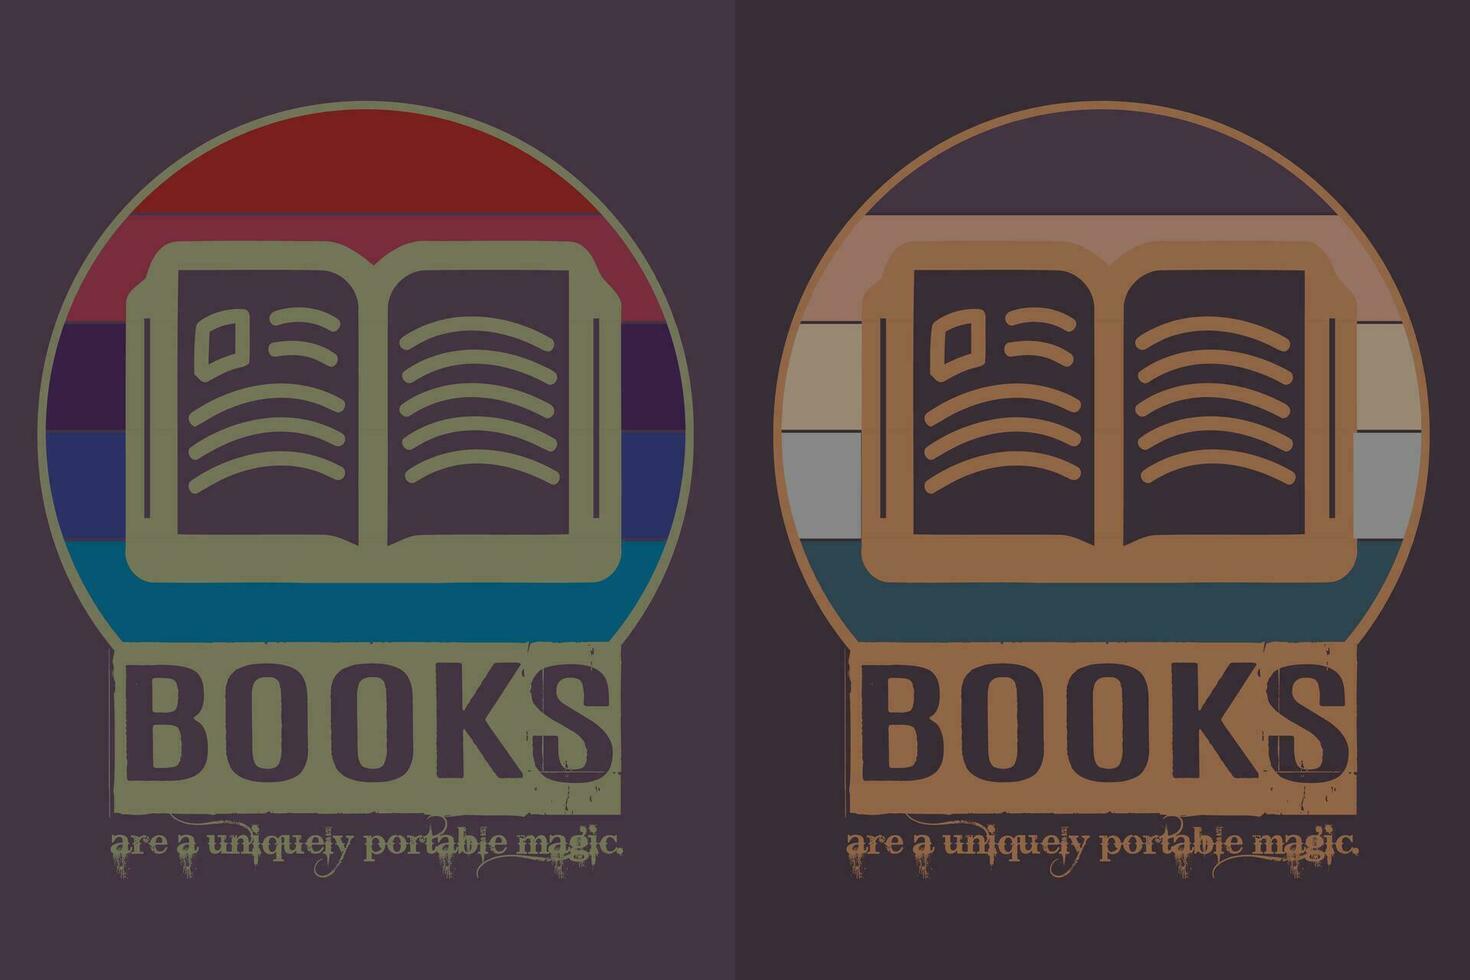 böcker är en unikt bärbar magi, bok älskare skjorta, litterär skjorta, bokälskande skjorta, läsning bok, bibliotekarie skjorta, bok läsare skjorta, inspirera skjorta, gåva för bibliotekarie, gåva för bok älskare vektor